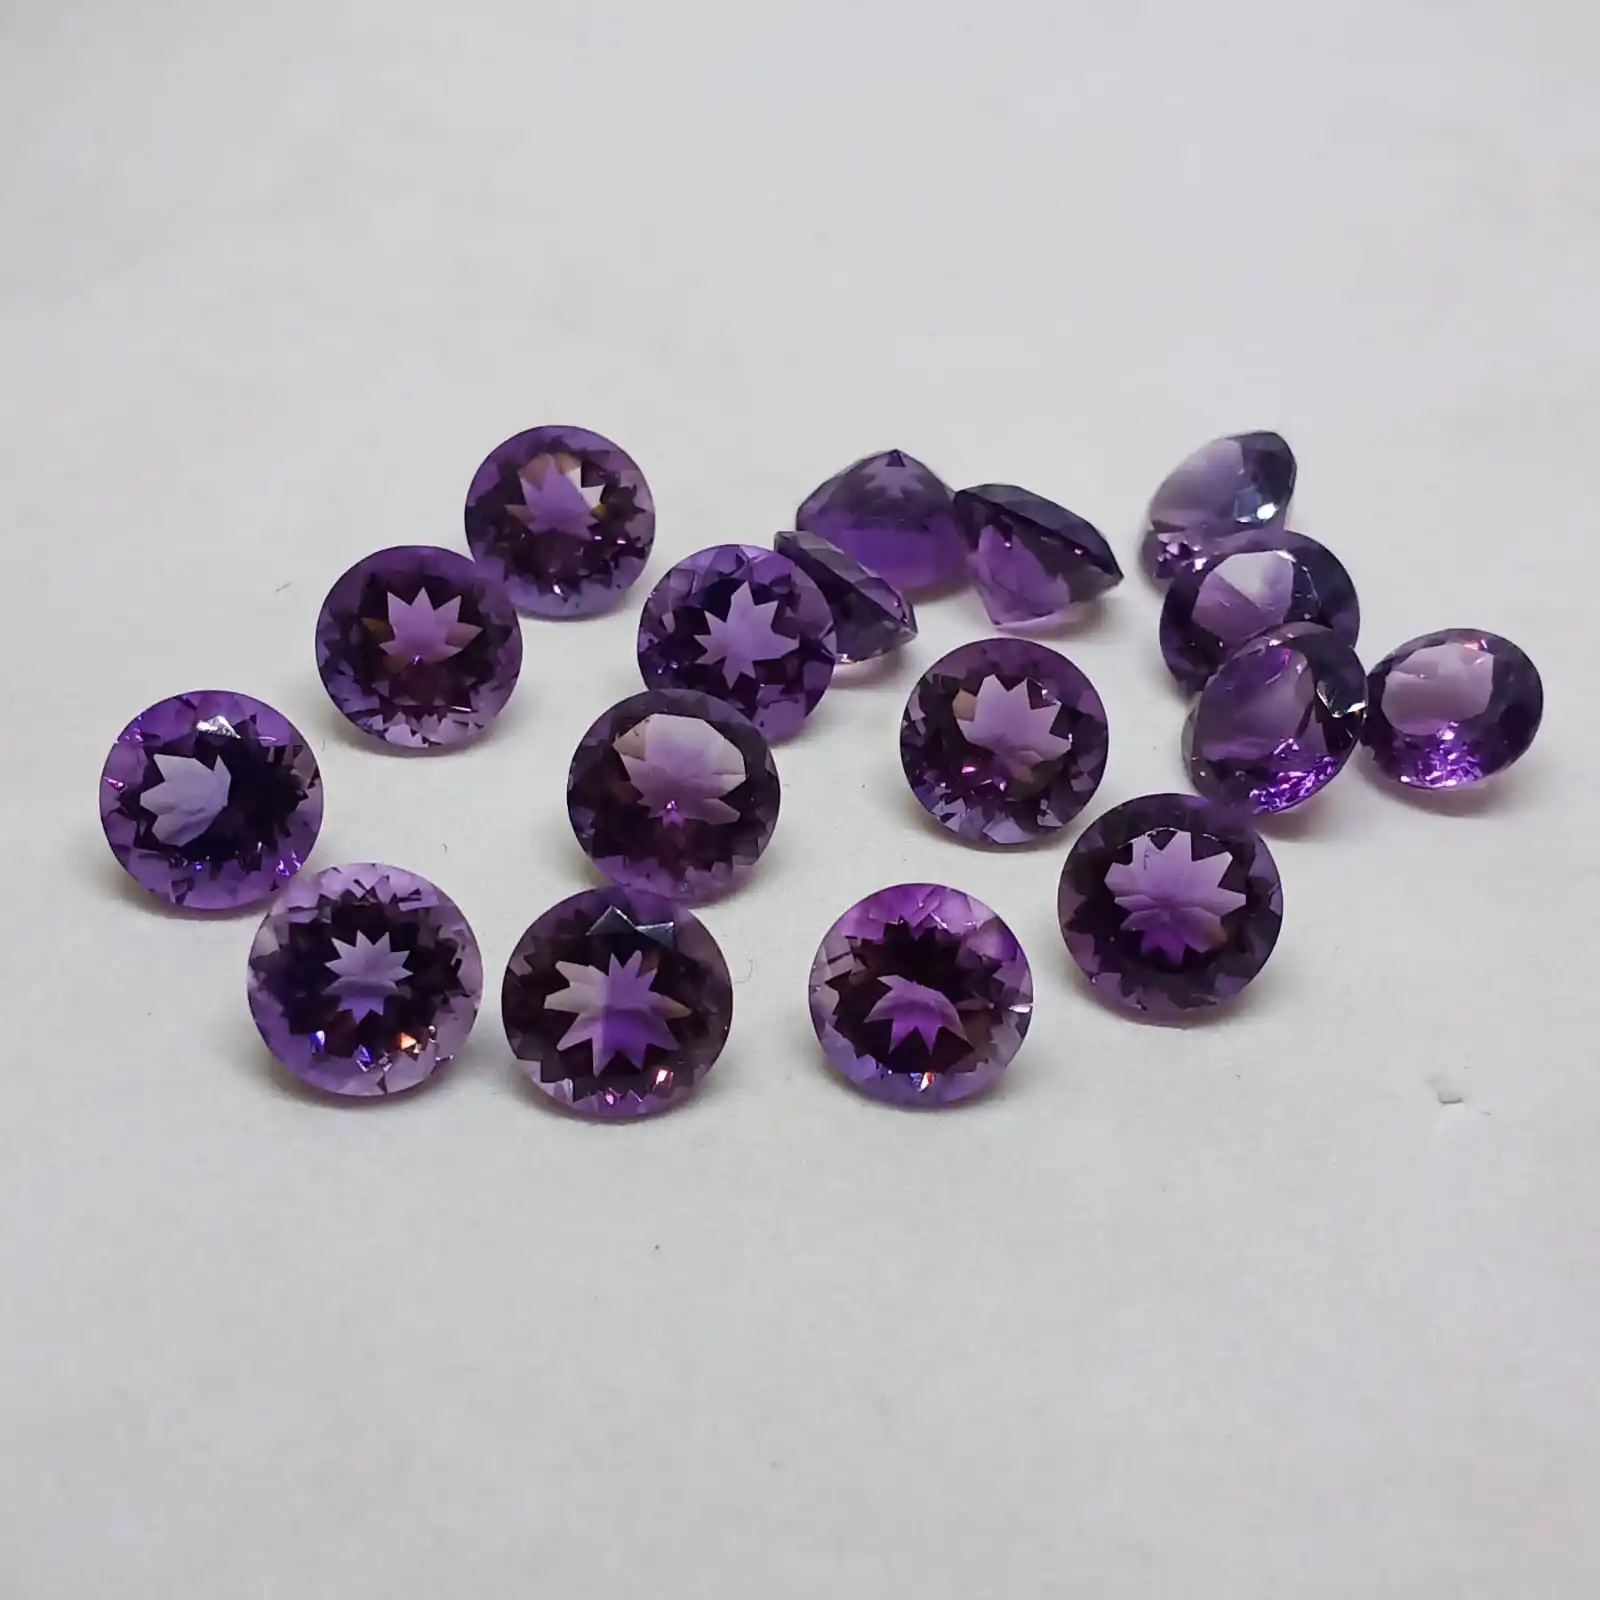 100% натуральный фиолетовый аметист, 10x10 мм Огранка круглая форма хорошее качество неоправленный полудрагоценный камень.